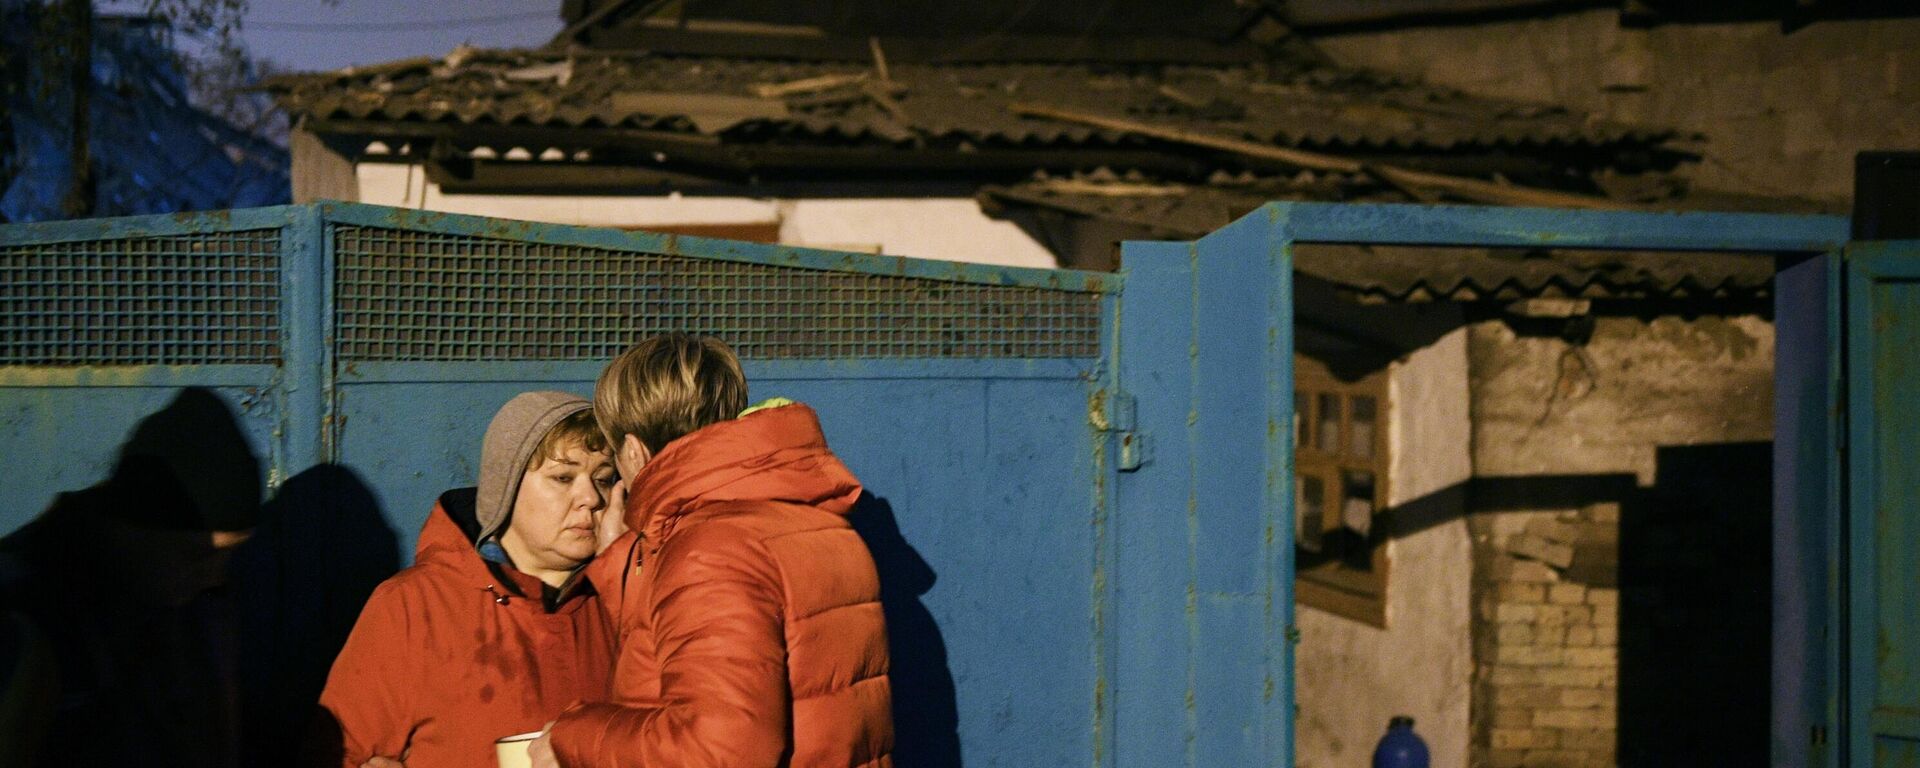 Moradores locais perto de um edifício residencial parcialmente destruído como resultado do bombardeio das Forças Armadas da Ucrânia em Donetsk, em 5 de novembro de 2022 - Sputnik Brasil, 1920, 05.11.2022